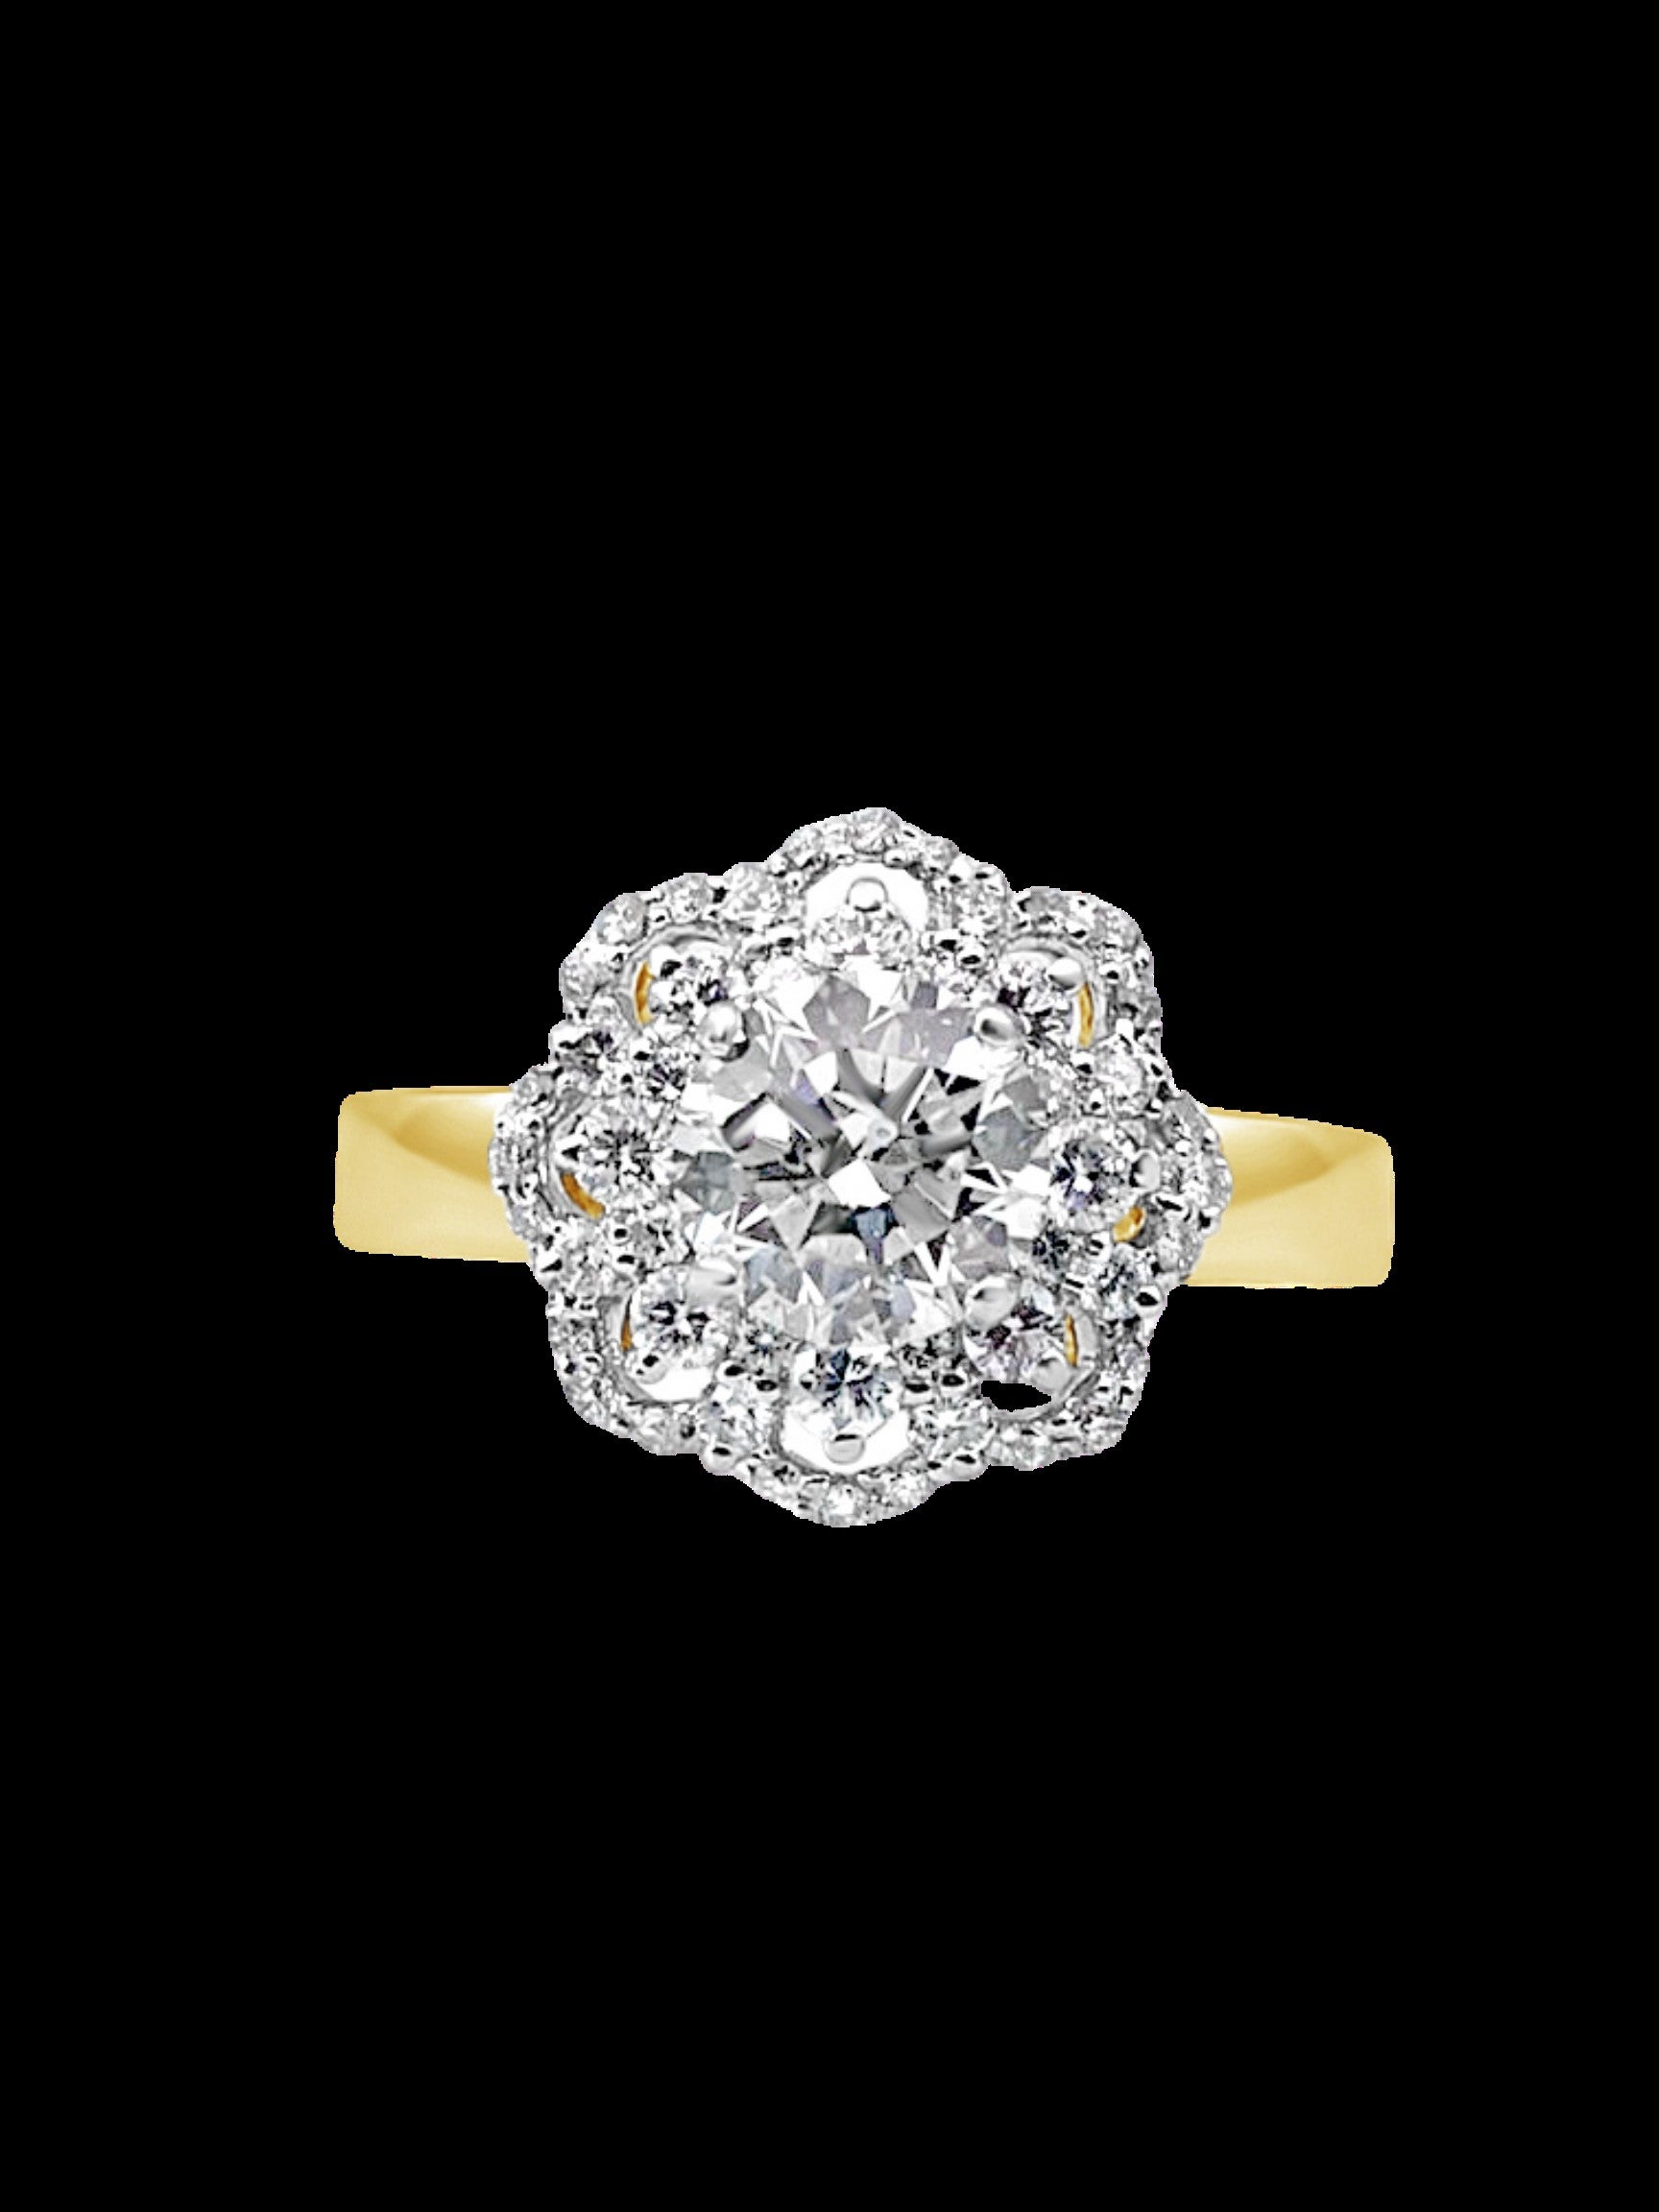 La bague en diamant Lona présente un solitaire de 1,03 carat entouré d'un anneau d'or incrusté de diamants, réalisé en or jaune 18 carats. Une belle bague d'accentuation, délicate mais éblouissante, ou une bague de fiançailles très spéciale pour la